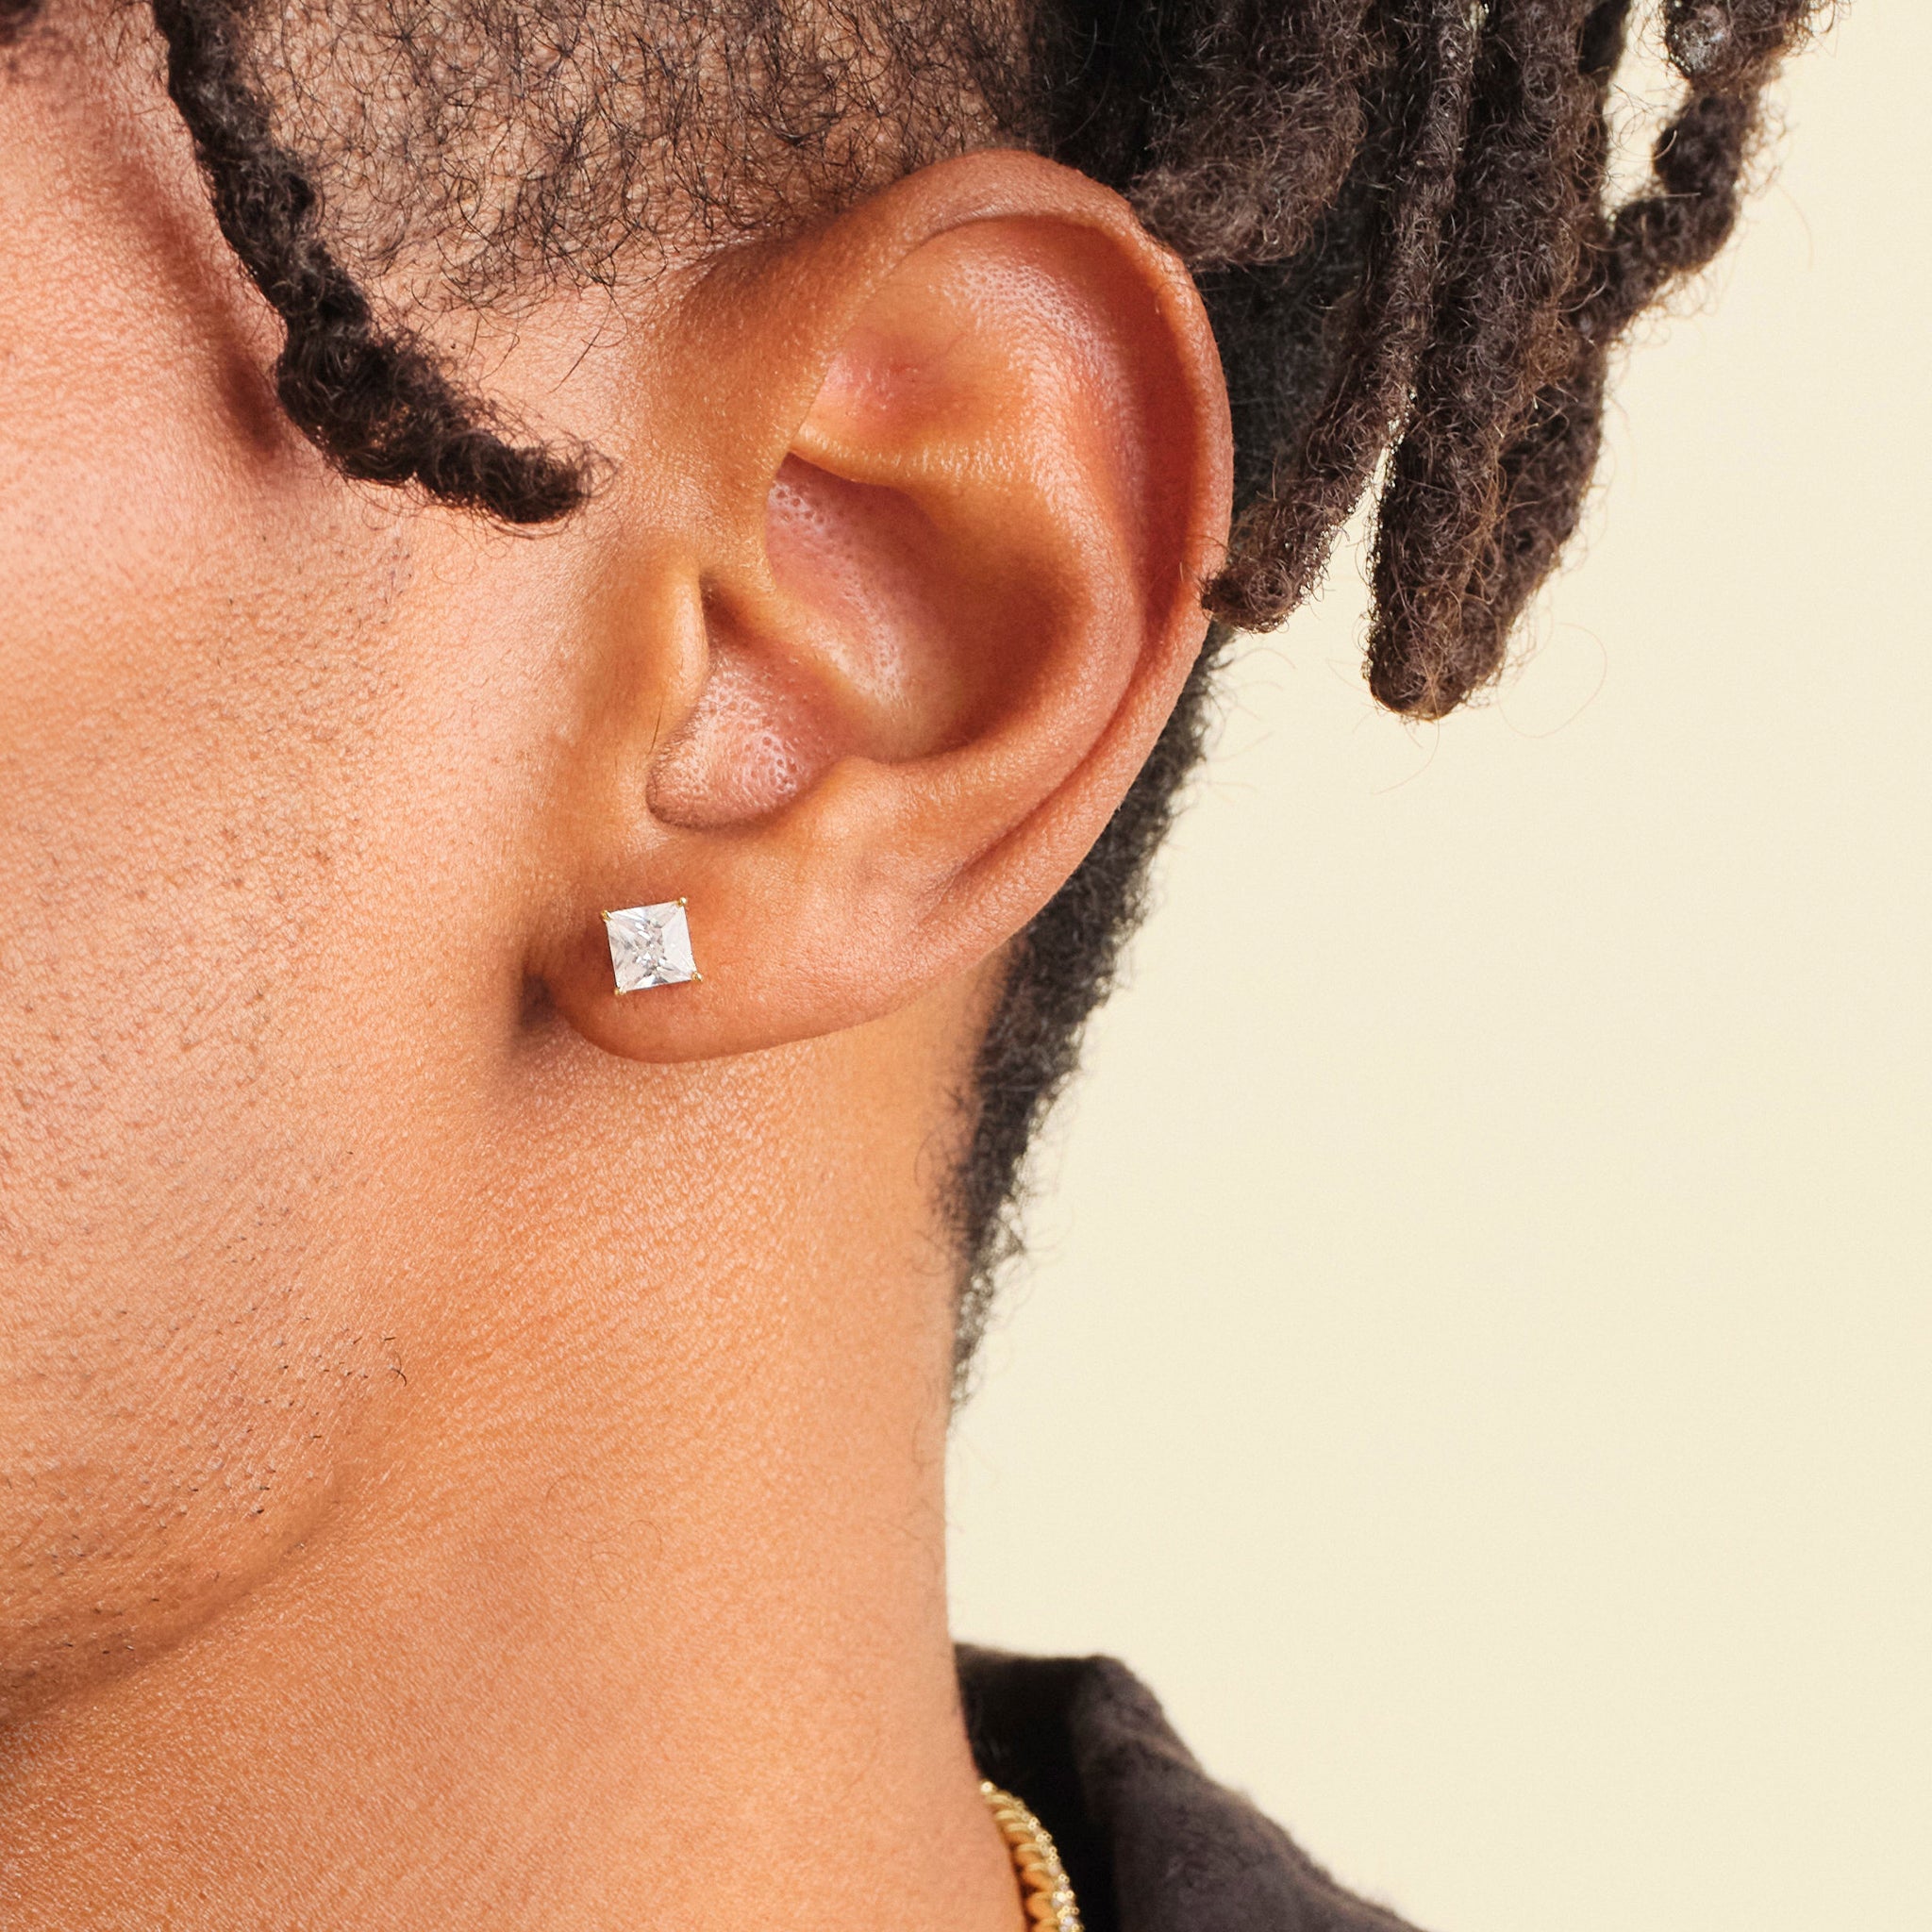 Classic Stud Earring - Men's Gold Studs - JAXXON